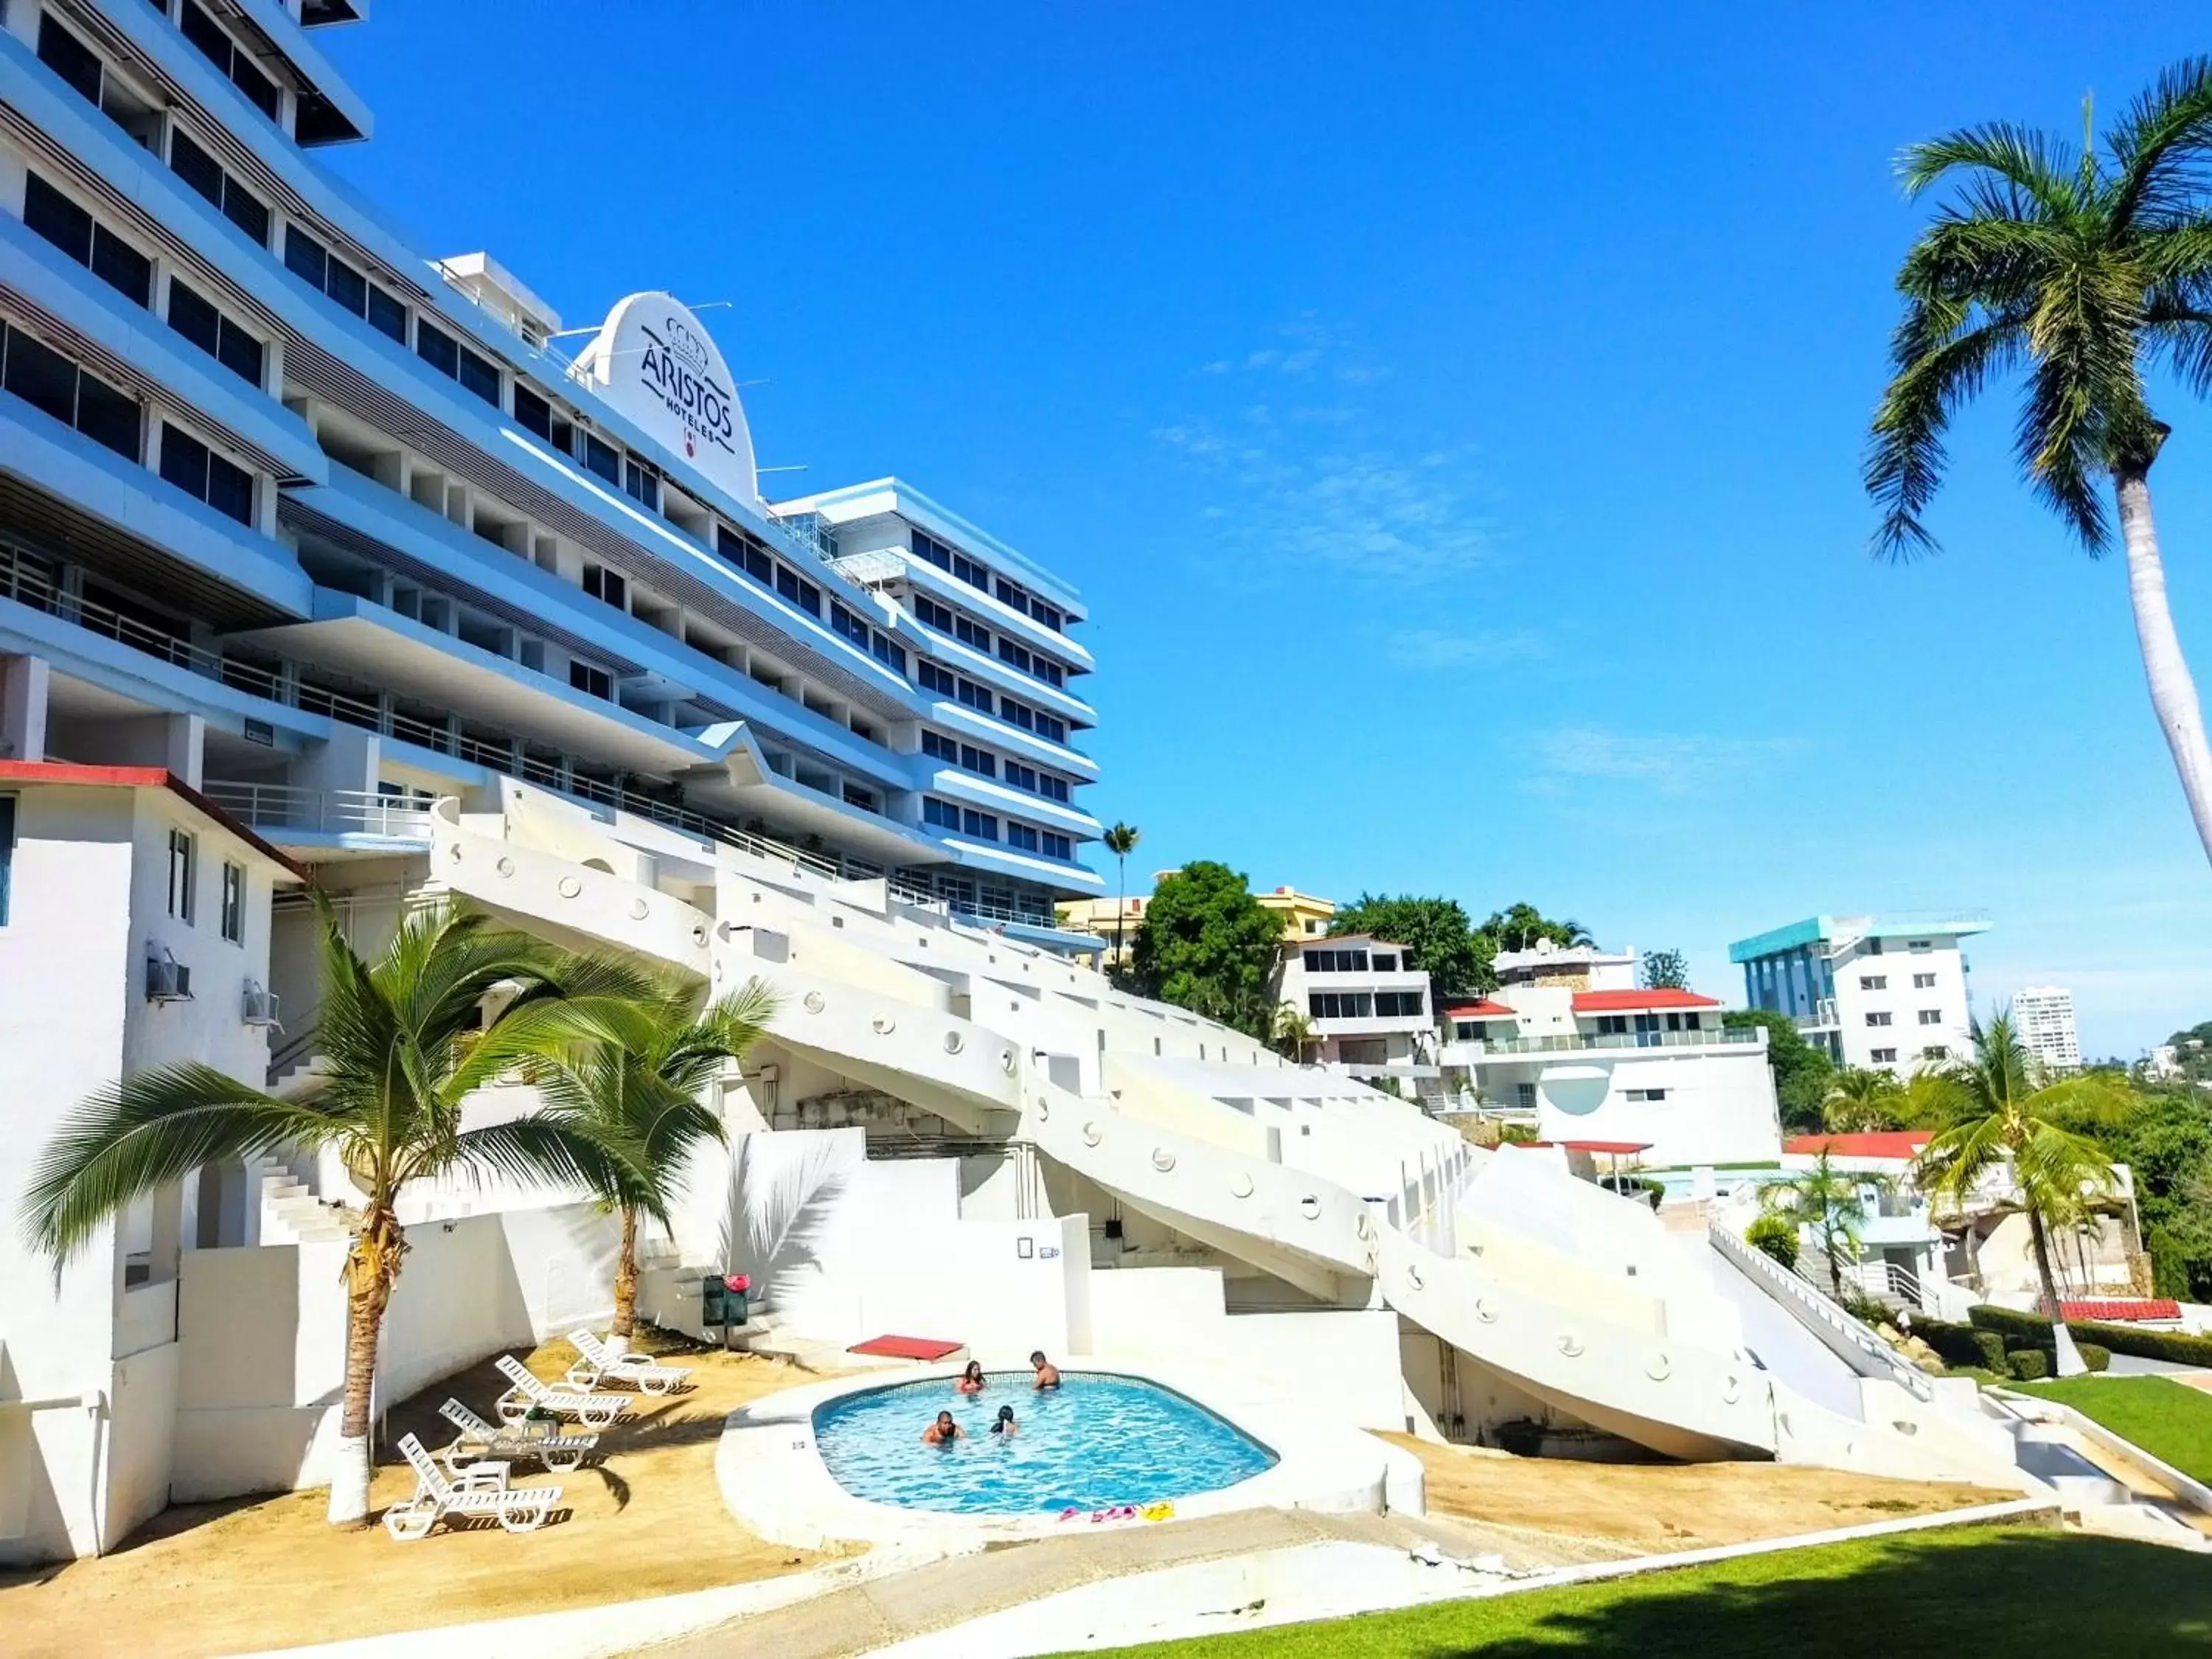 Property building in Hotel Aristos Acapulco